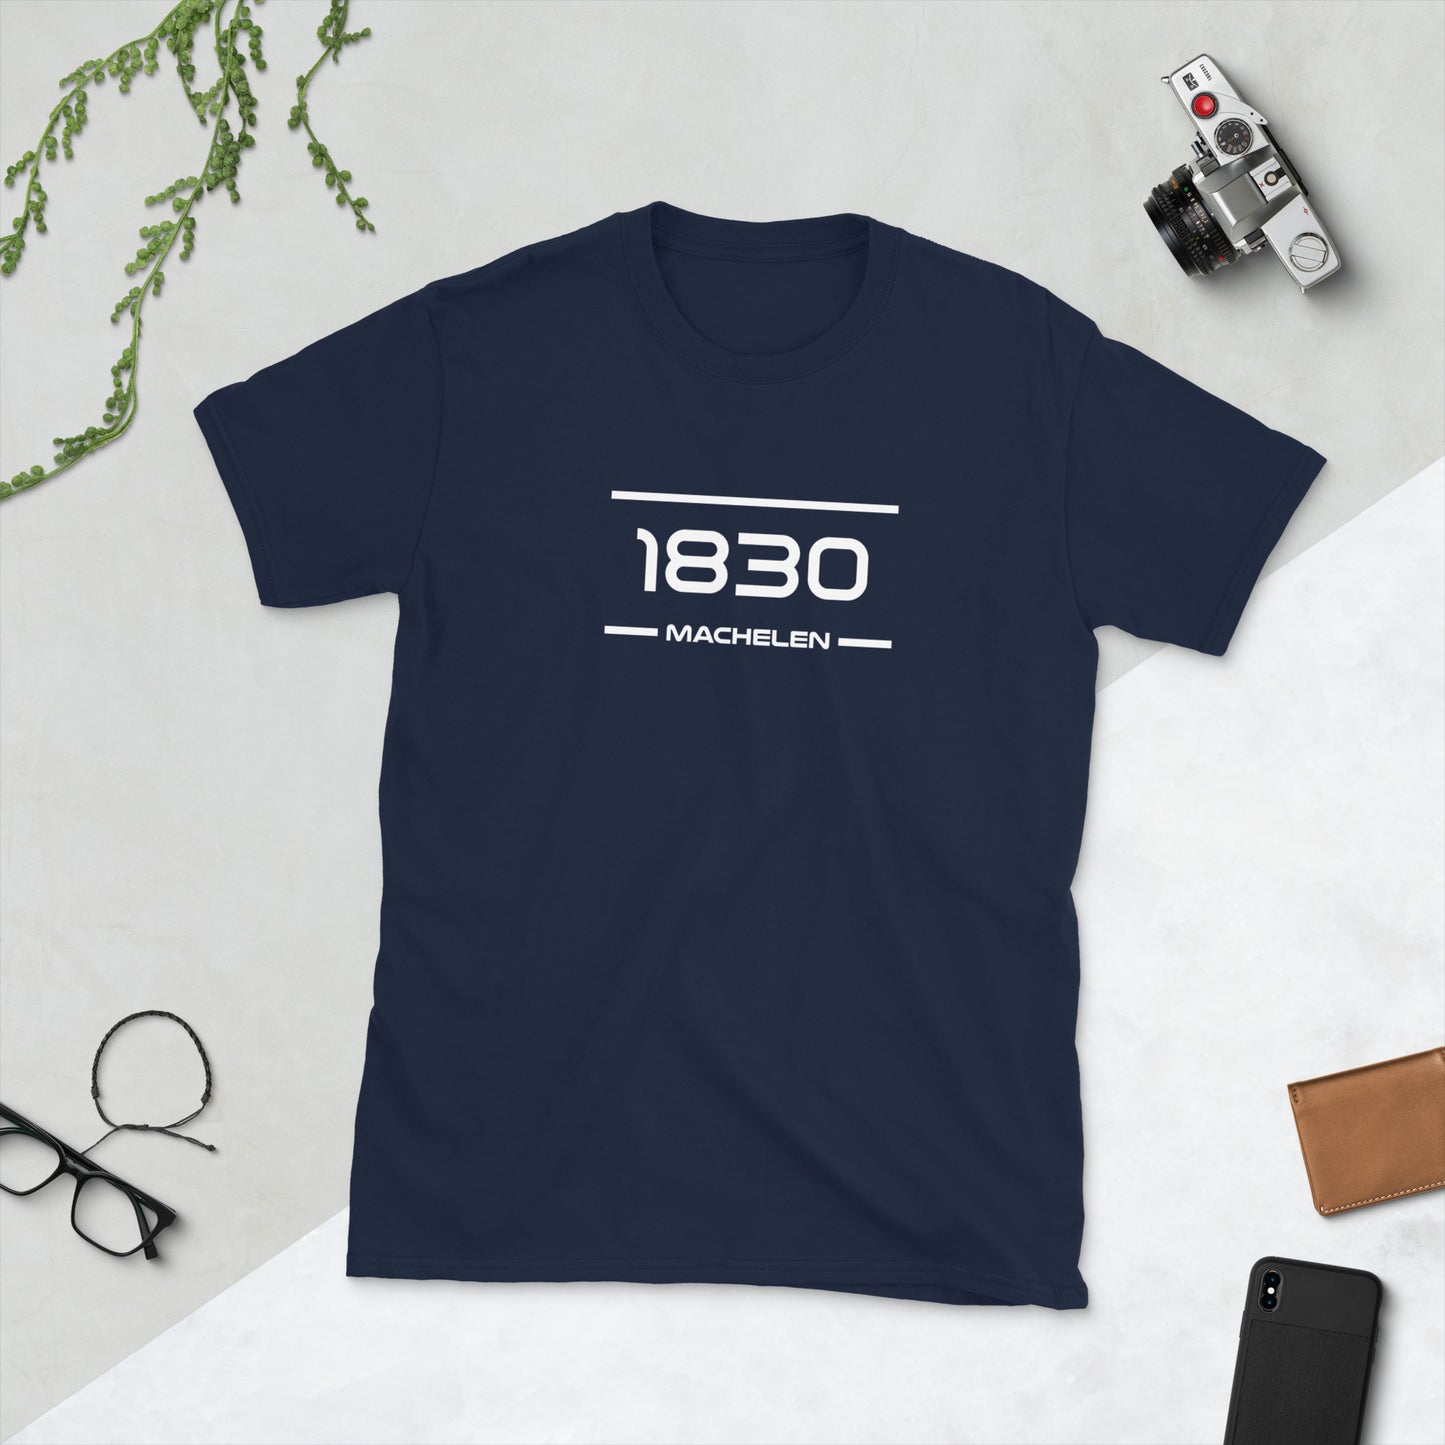 Tshirt - 1830 - Machelen